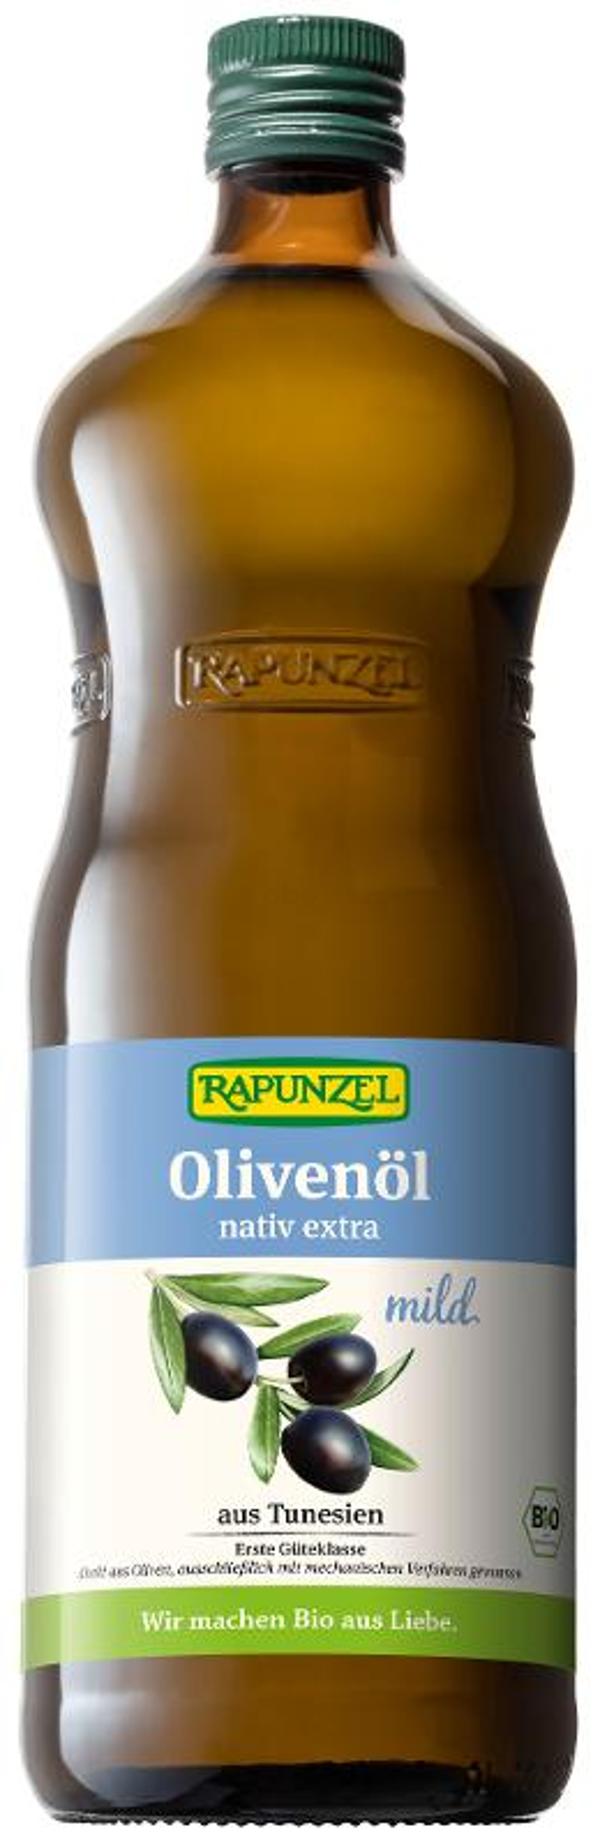 Produktfoto zu Olivenöl mild, nativ extra 1 l